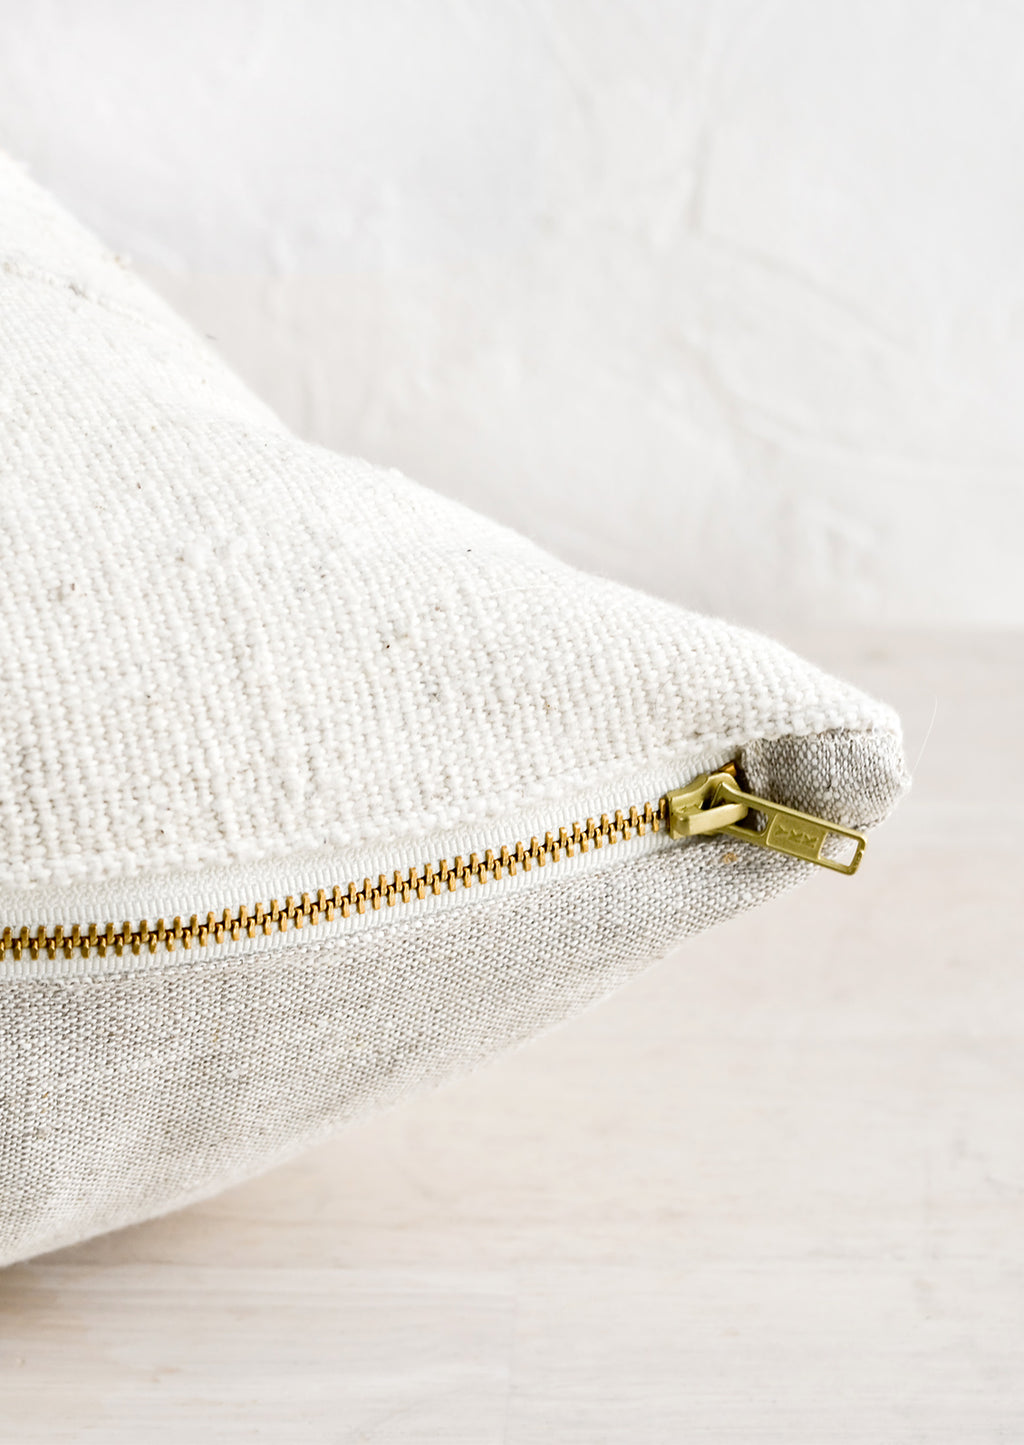 5: An exposed brass zipper on the bottom of a throw pillow.